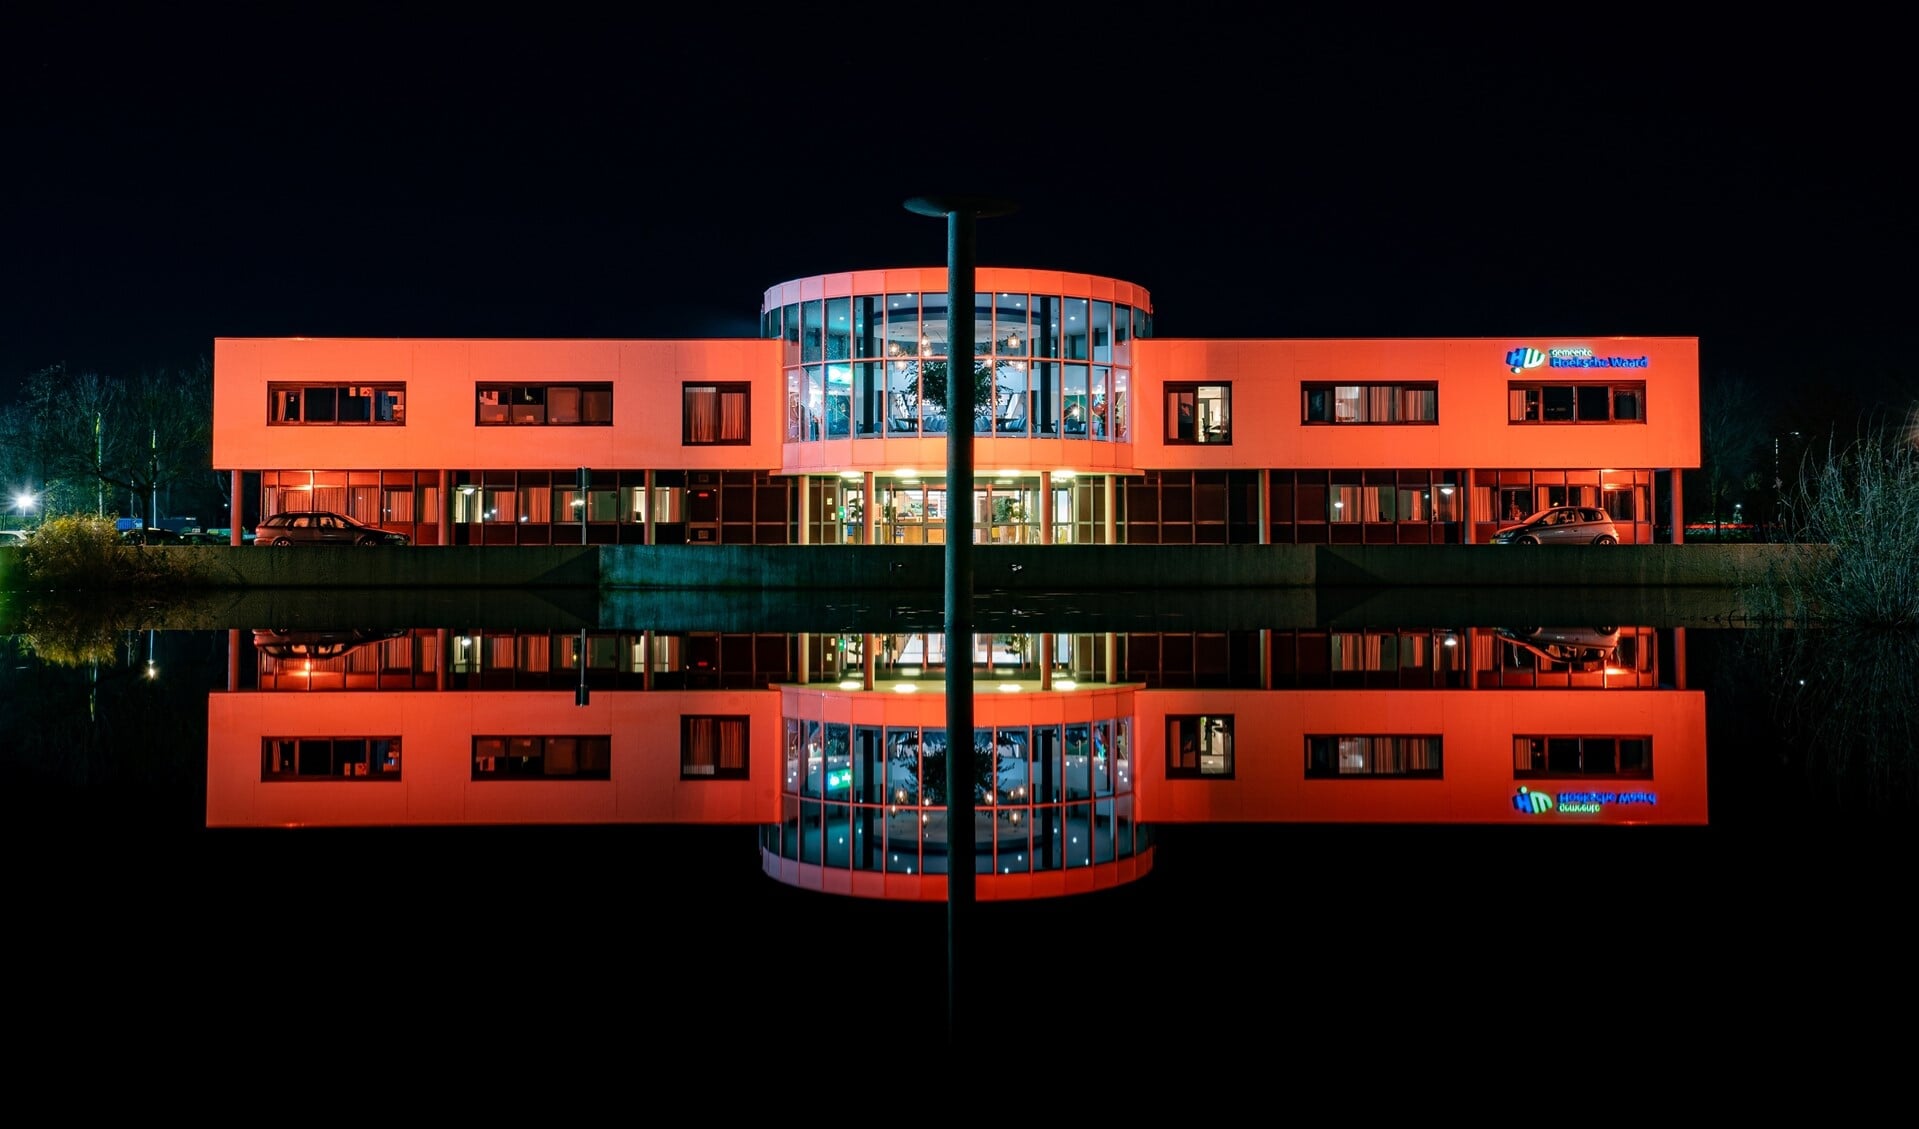 De gemeentehuizen in Oud-Beijerland en Maasdam zijn in het kader van Orange the World elke avond oranje verlicht. 